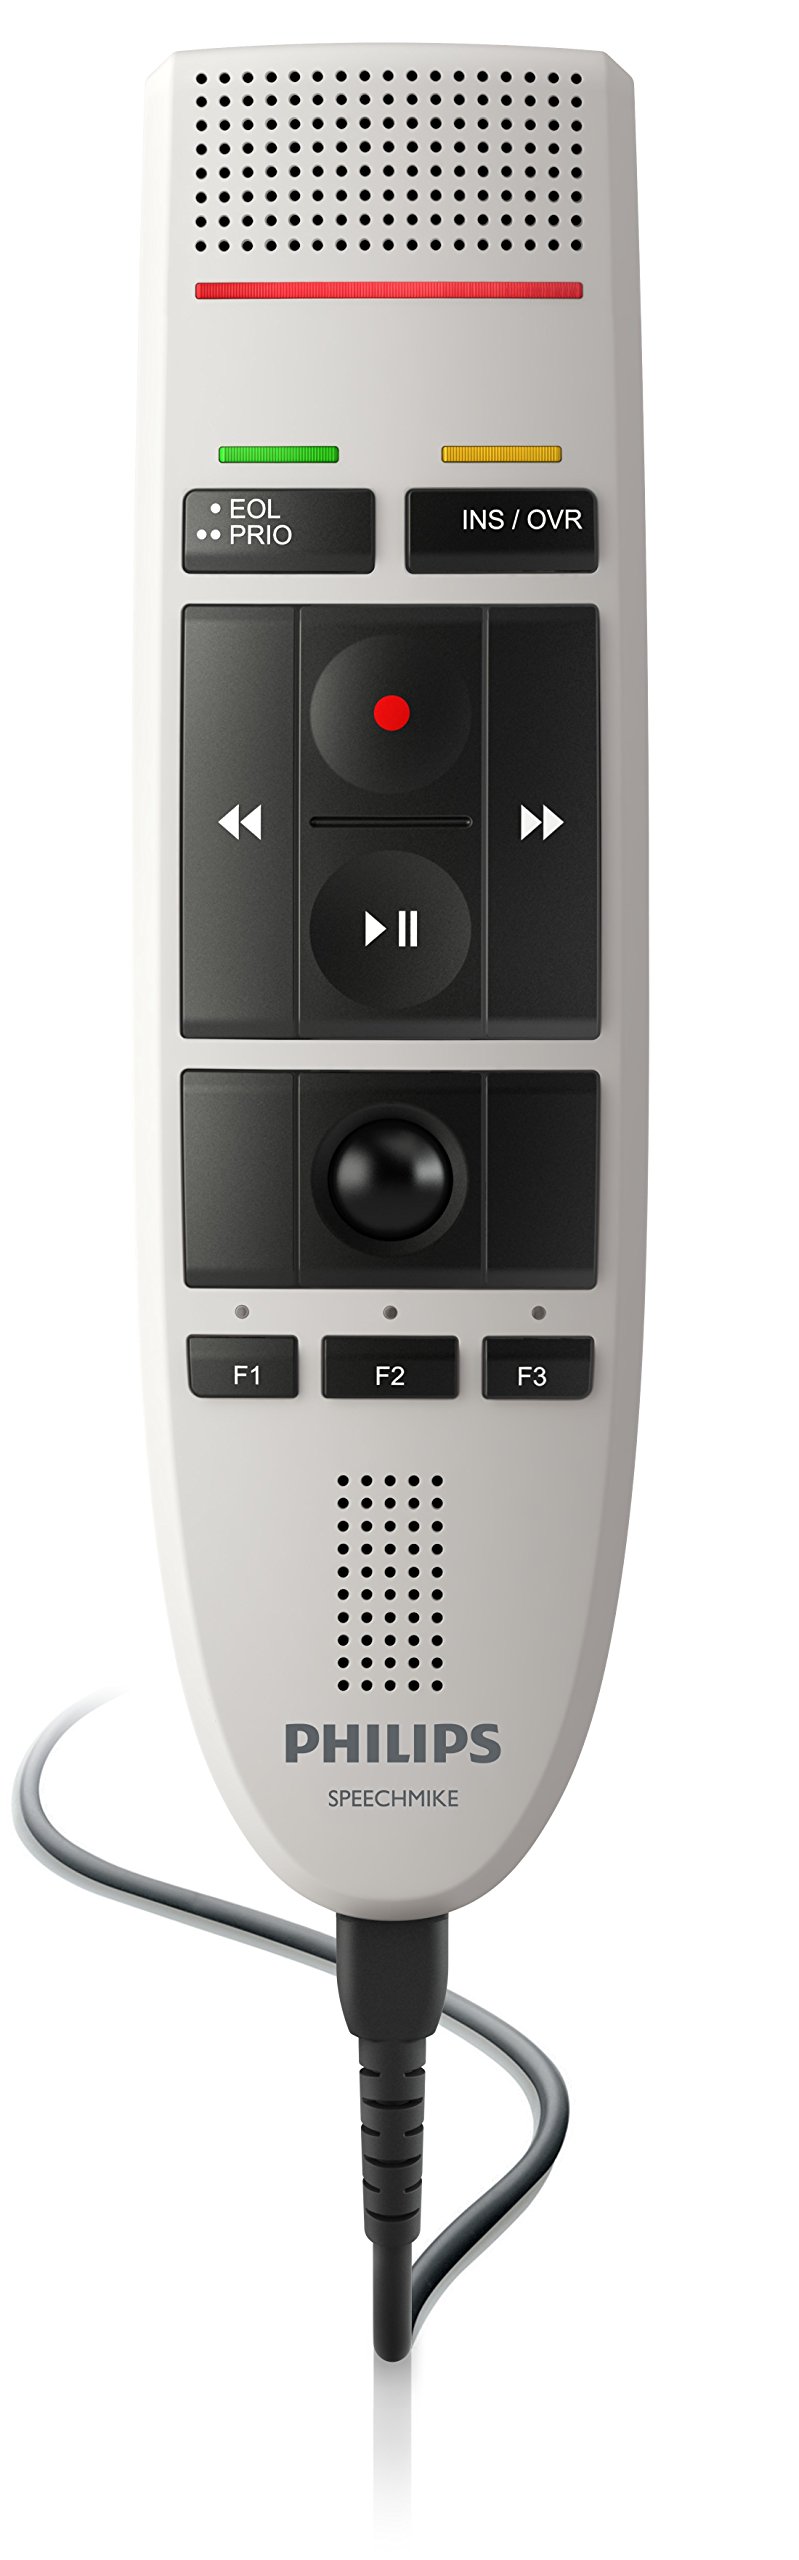 Philips LFH3200 SpeechMike III Pro (obsługa przyciskiem) Profesjonalny mikrofon USB do dyktowania za pomocą komputera